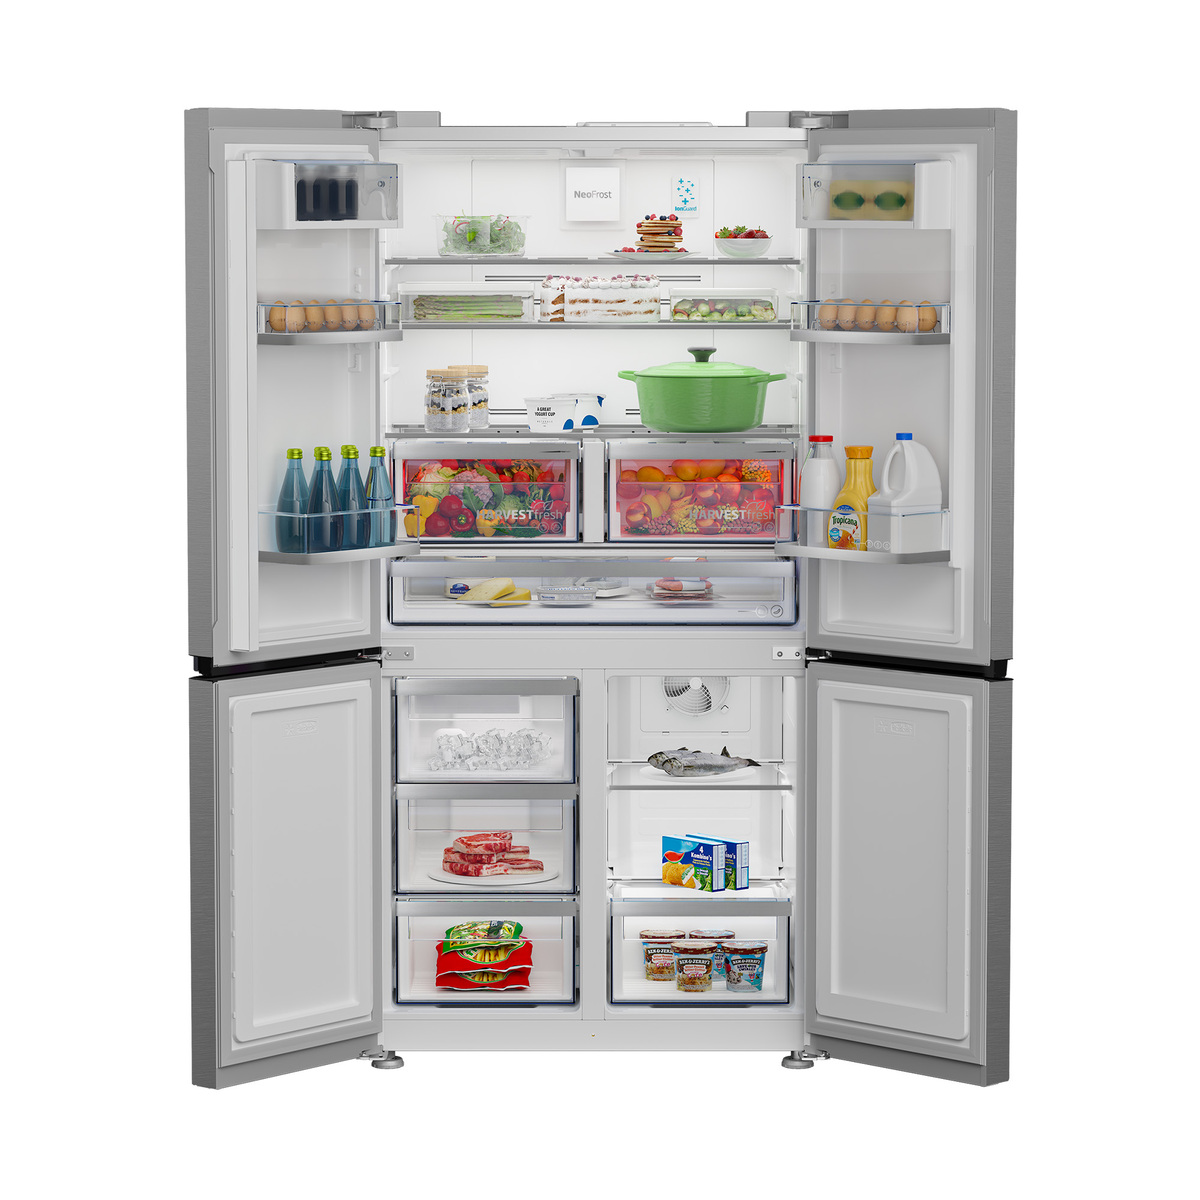 Beko Side-By-Side Refrigerator GNE794DX 624L